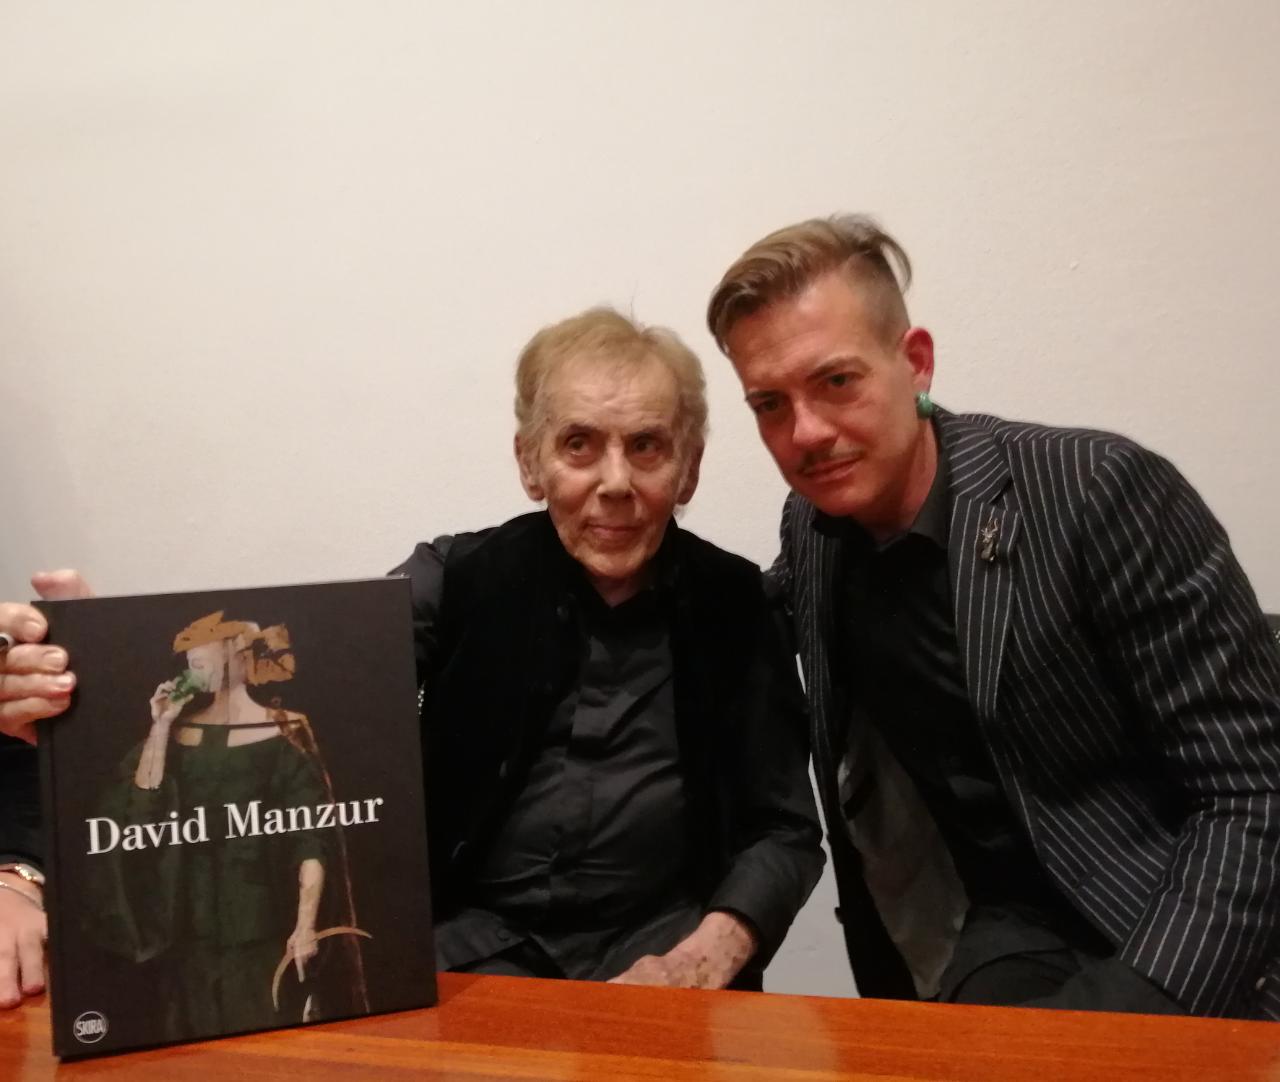 Imagen noticia David Manzur, 70 años de carrera artística se celebran con un libro